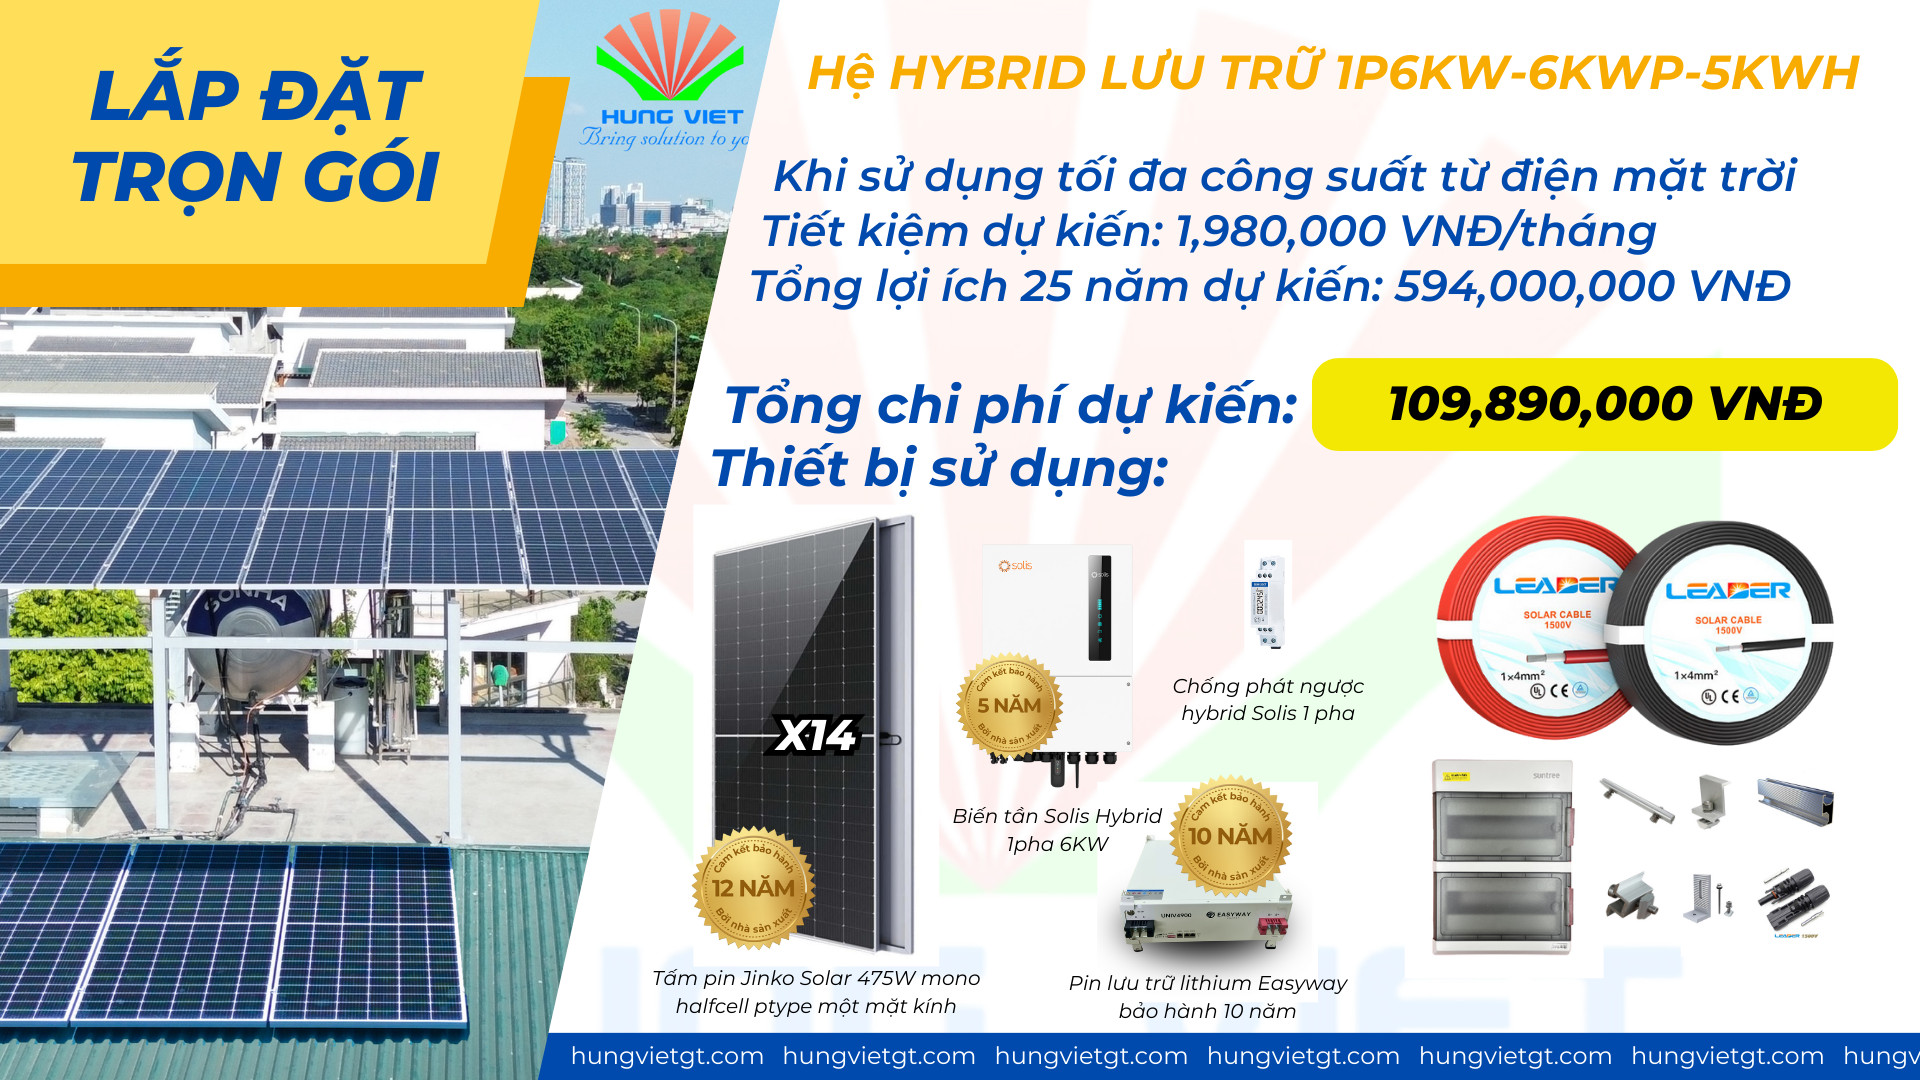 Combo lắp đặt trọn gói điện mặt trời hybrid 1P 6Kw lưu trữ 5kwh